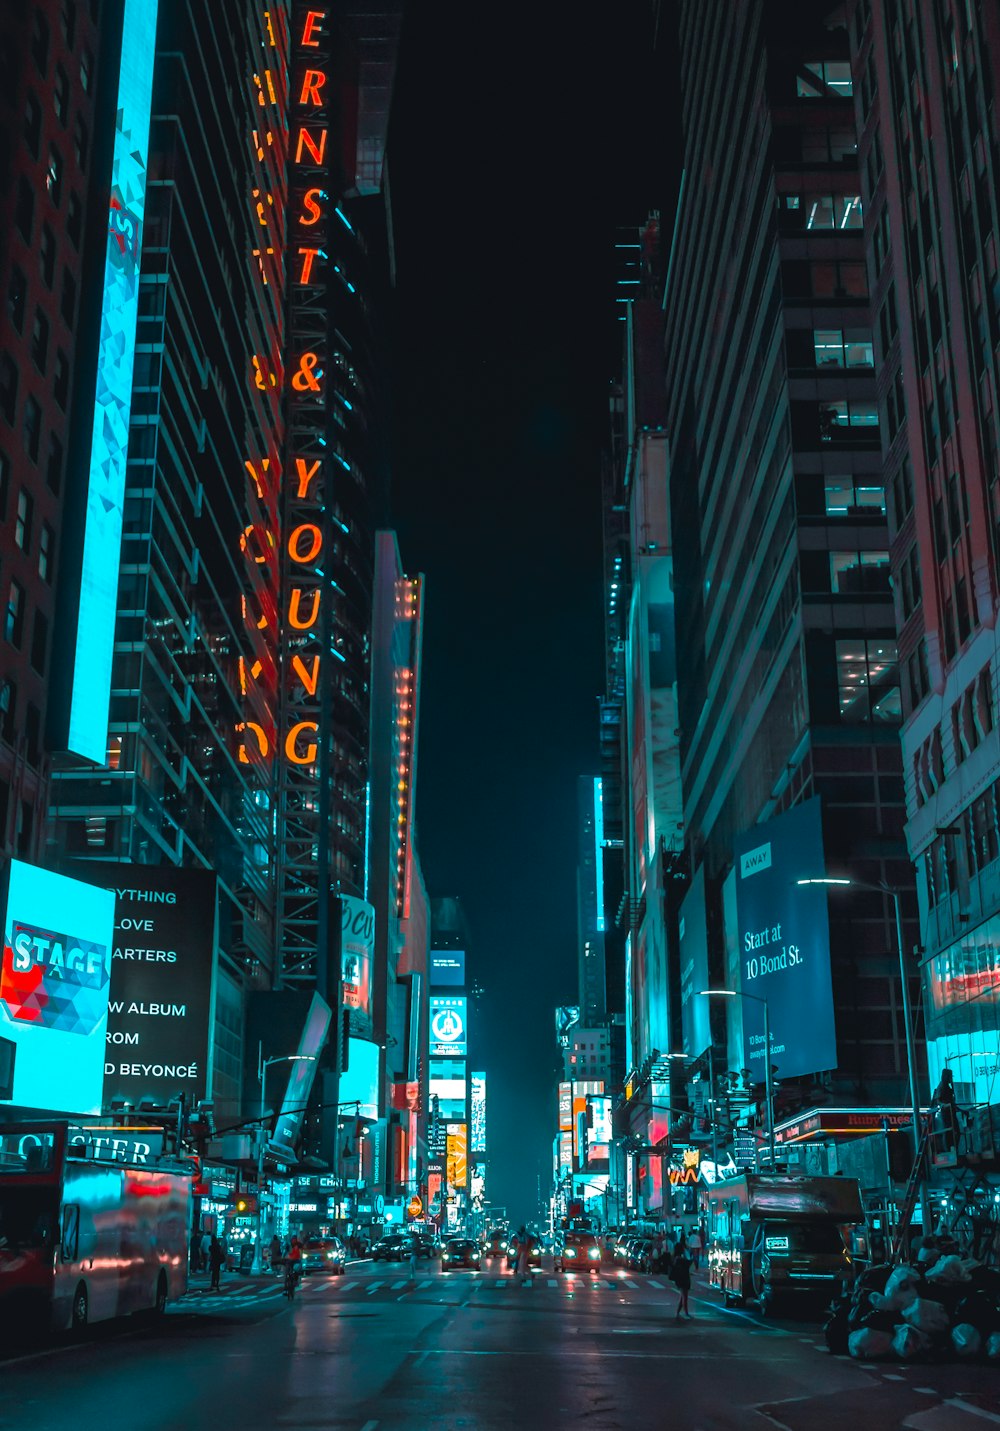 Fotografia di strada di veicoli che viaggiano su strada tra grandi edifici durante la notte